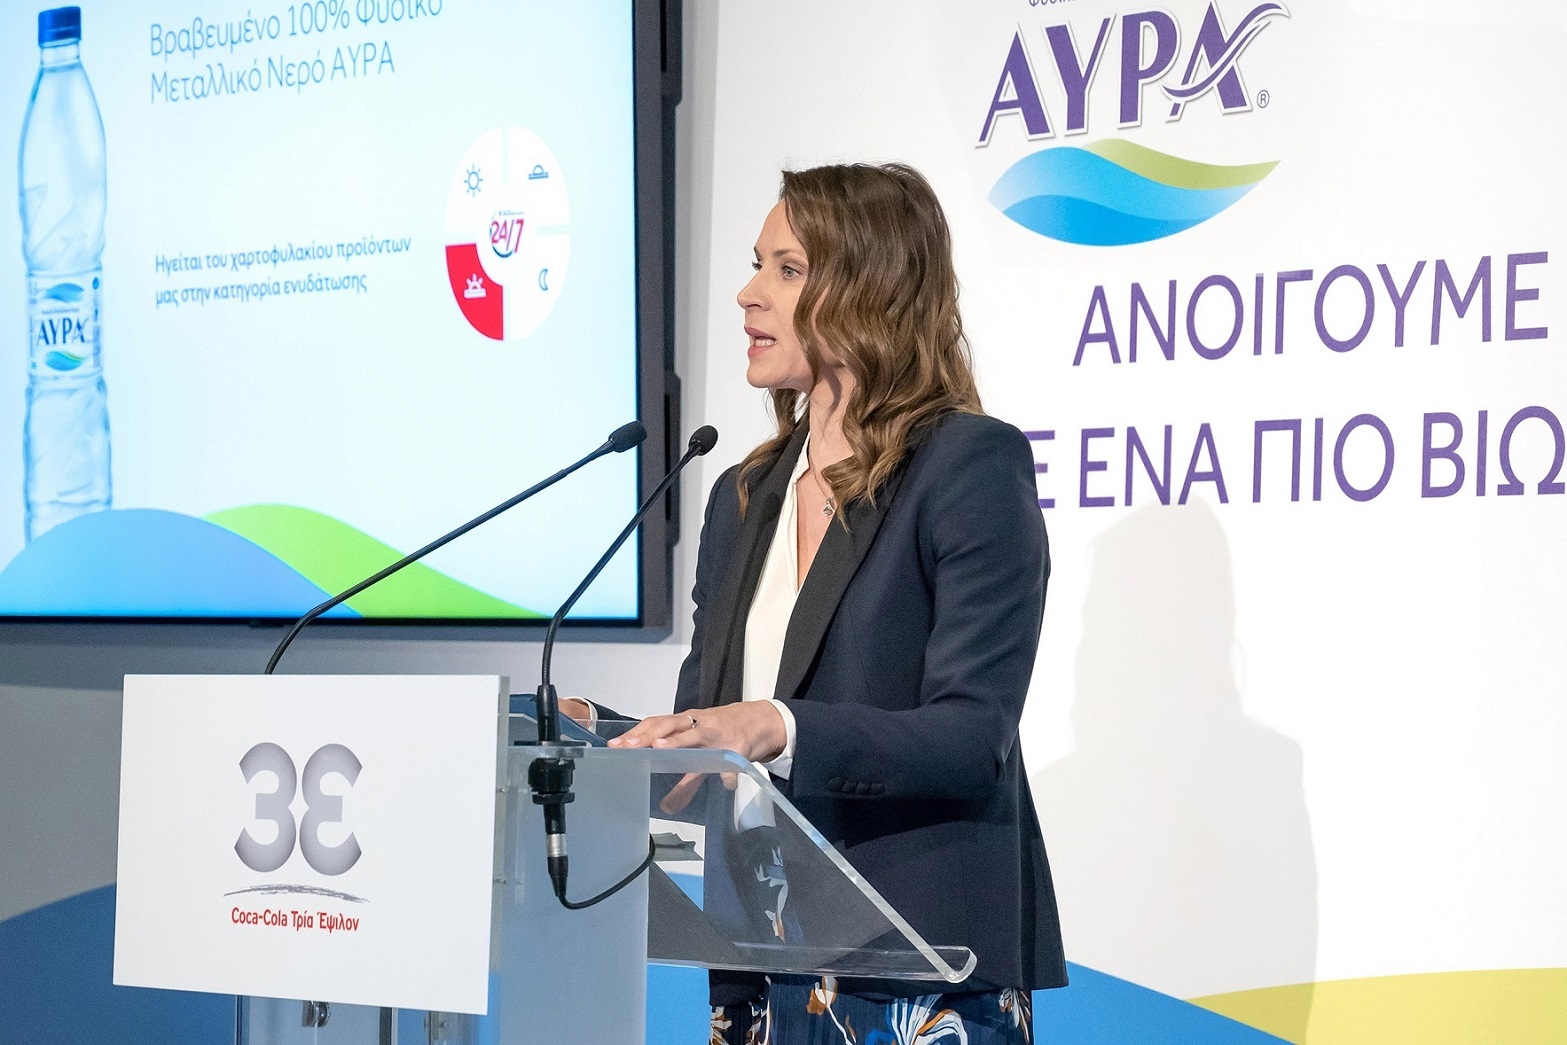 Μαρία Αναργύρου - Νίκολιτς, Γενική Διευθύντρια της Coca-Cola Τρία Έψιλον για Ελλάδα & Κύπρο